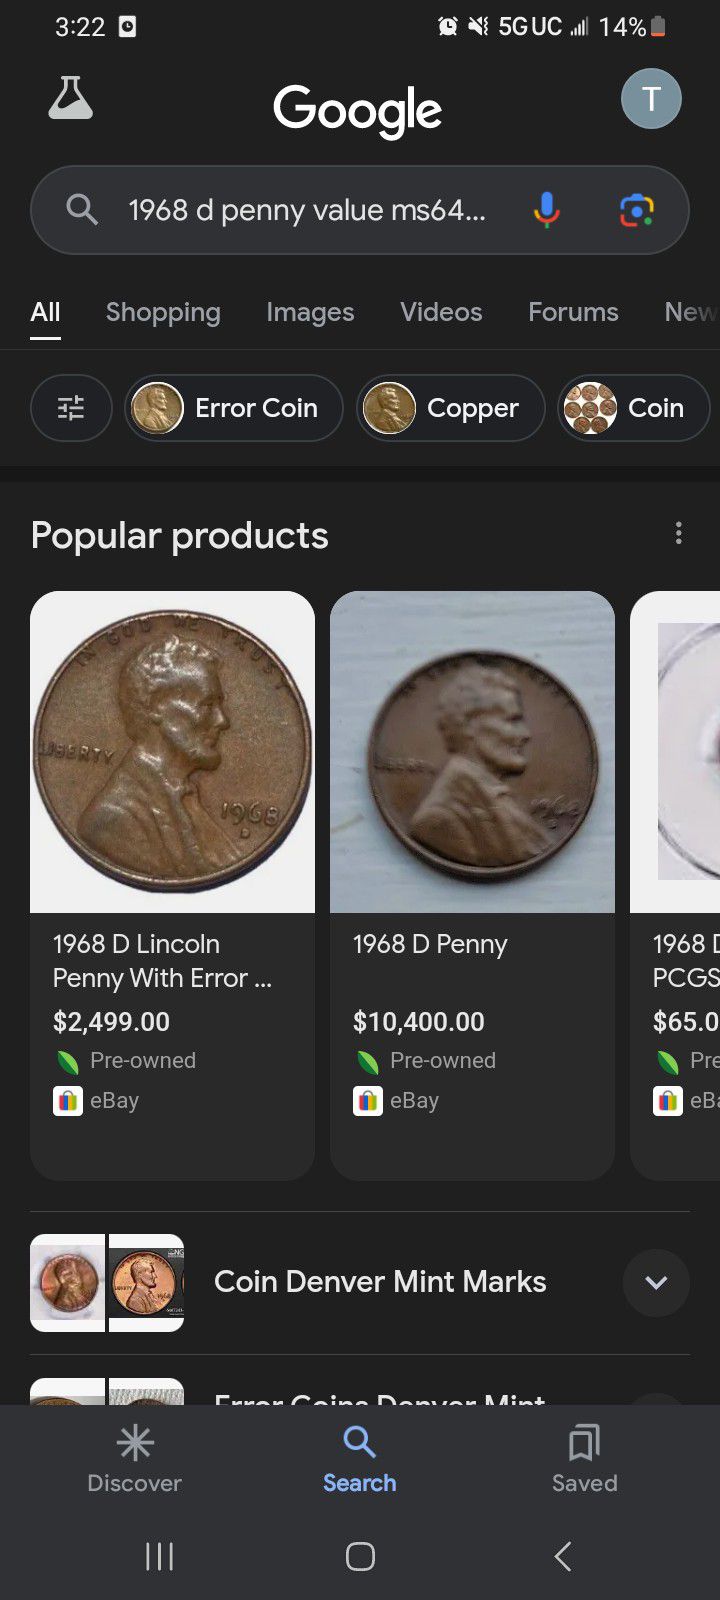 1968 D Penny